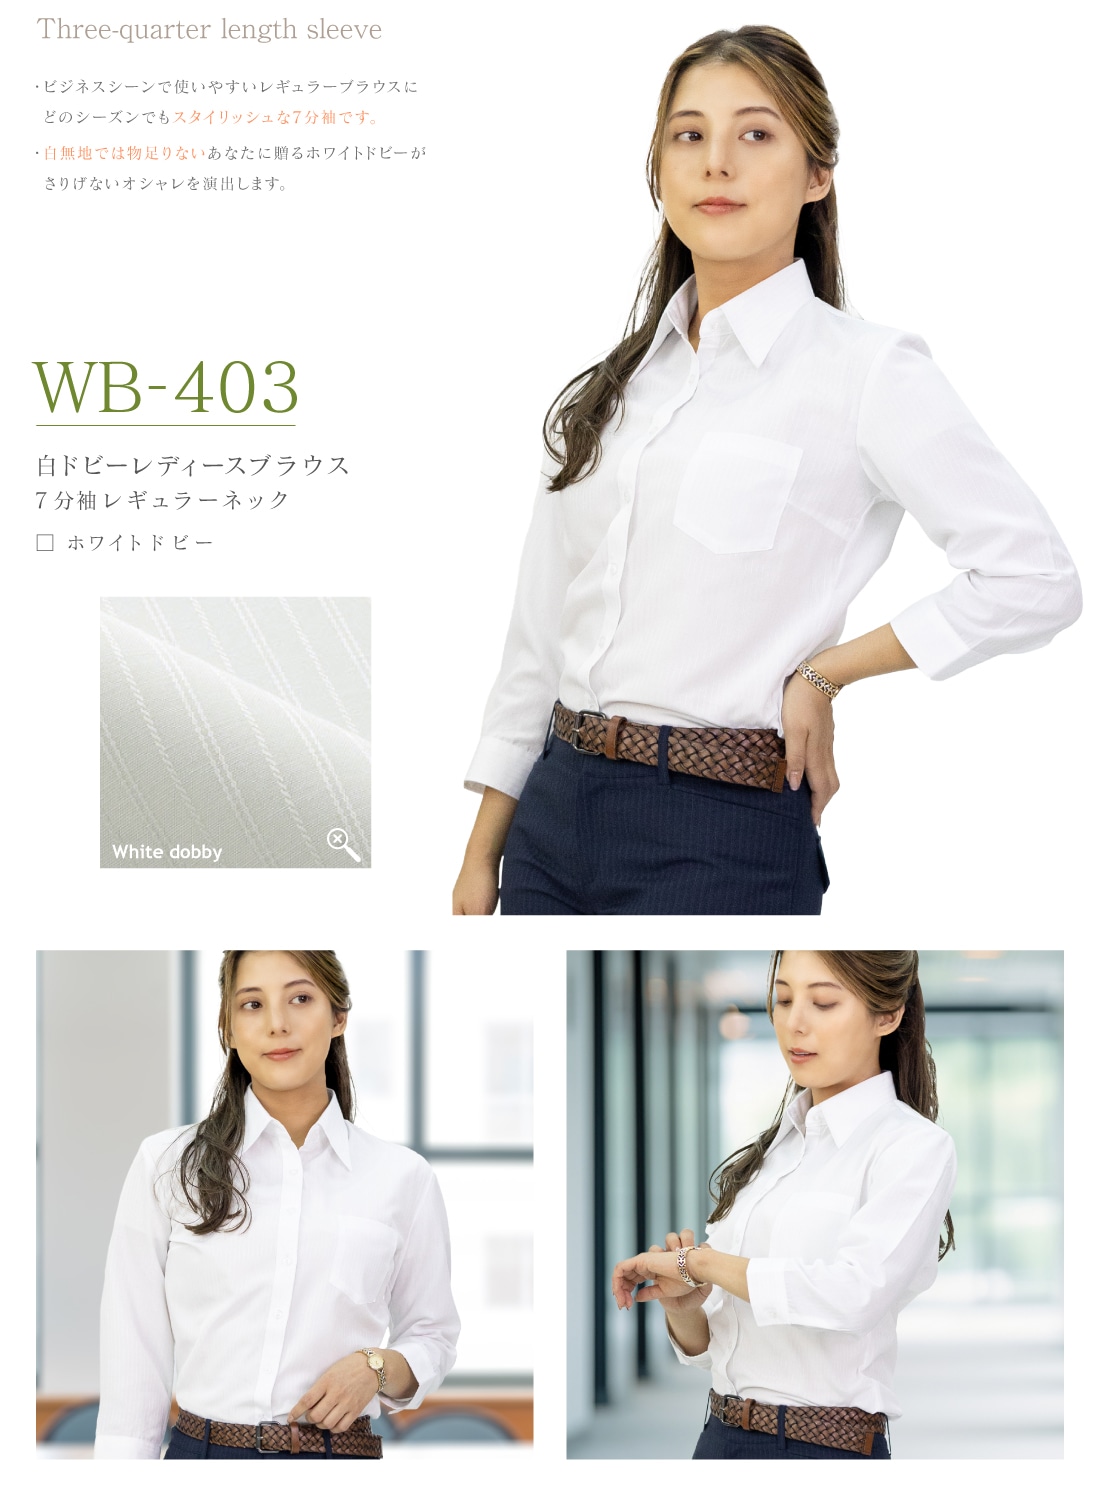 選べる 5枚セット 半袖 七分袖 長袖 白ドビー レディース ワイシャツ おしゃれ ブラウス 白シャツ 9種から選べる5枚セット 全5サイズ  WBシリーズ 送料無料-WAWAJAPAN